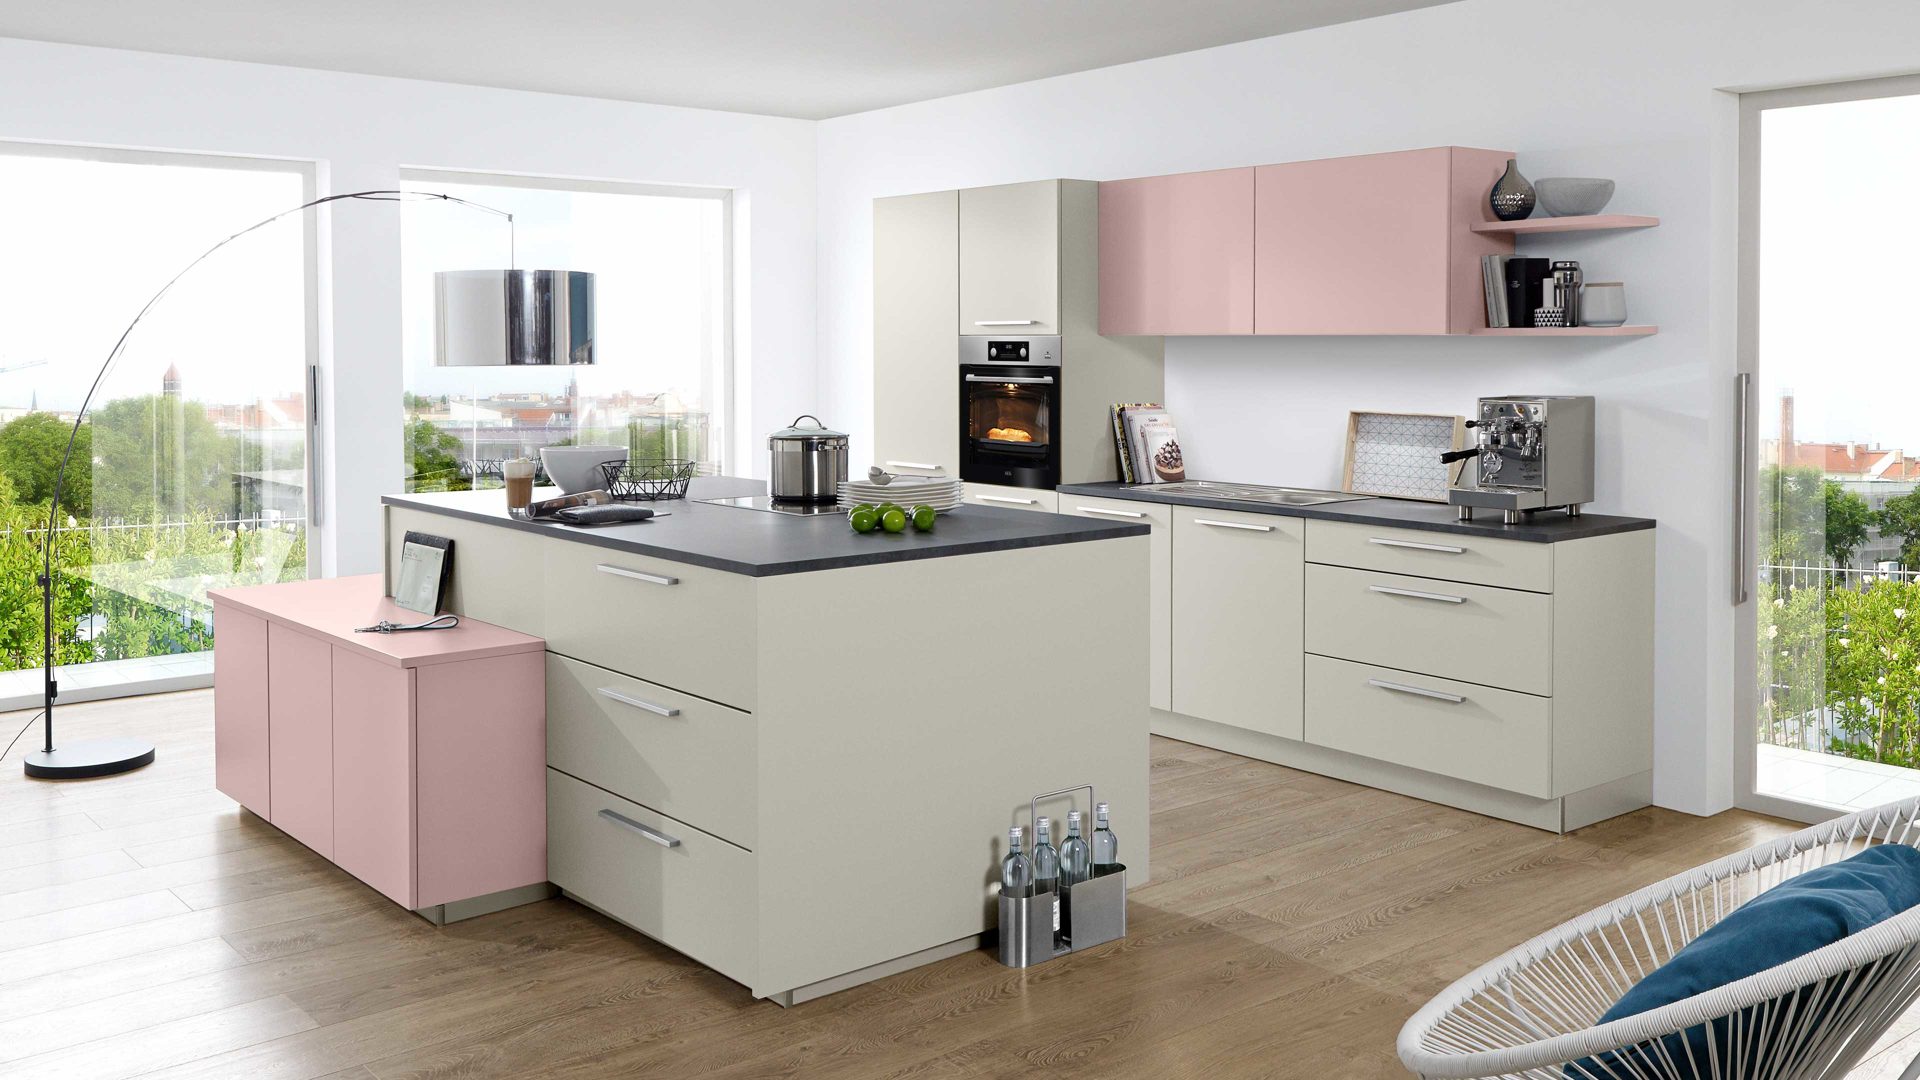 Einbauküche Nolte® küchen aus Holz in Pastell nolte Einbauküche Soft Lack mit AEG-Einbaugeräten Platingrau & Lavendel – zweizeilig